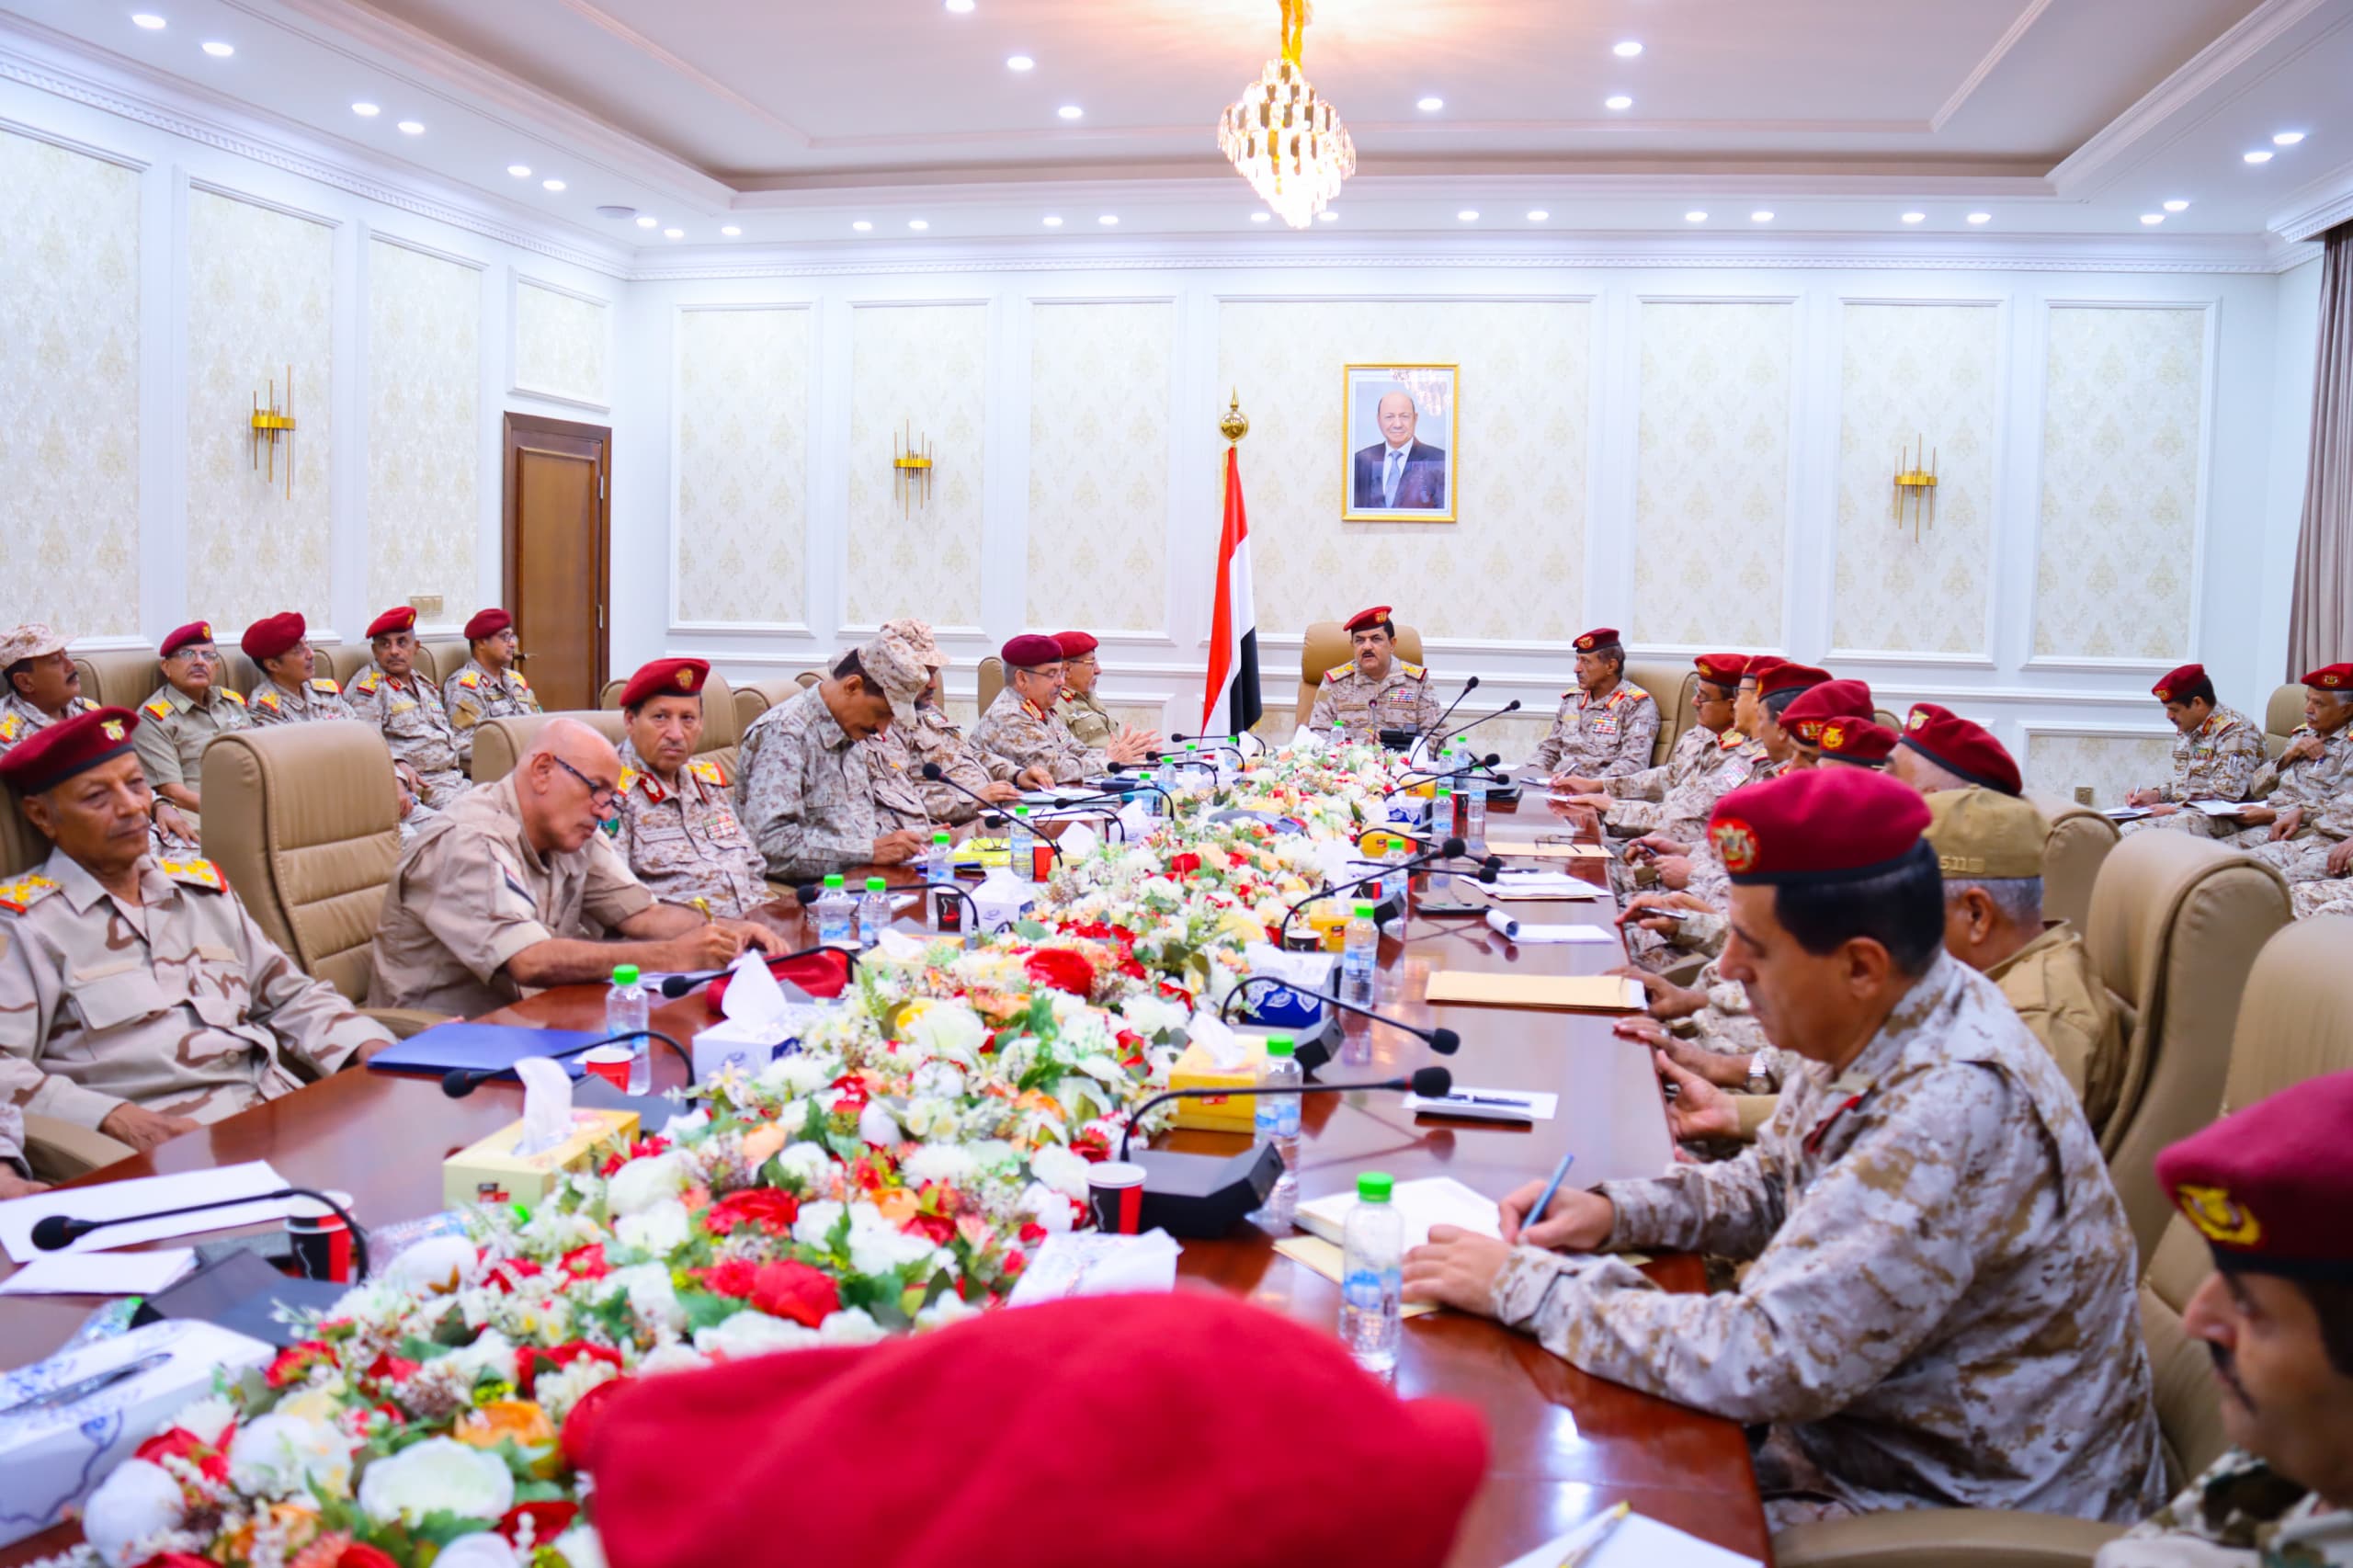 “الدفاع اليمنية” تعلن دعمها لقرارات البنك المركزي في عدن وتصفها بـ"الشجاعة"